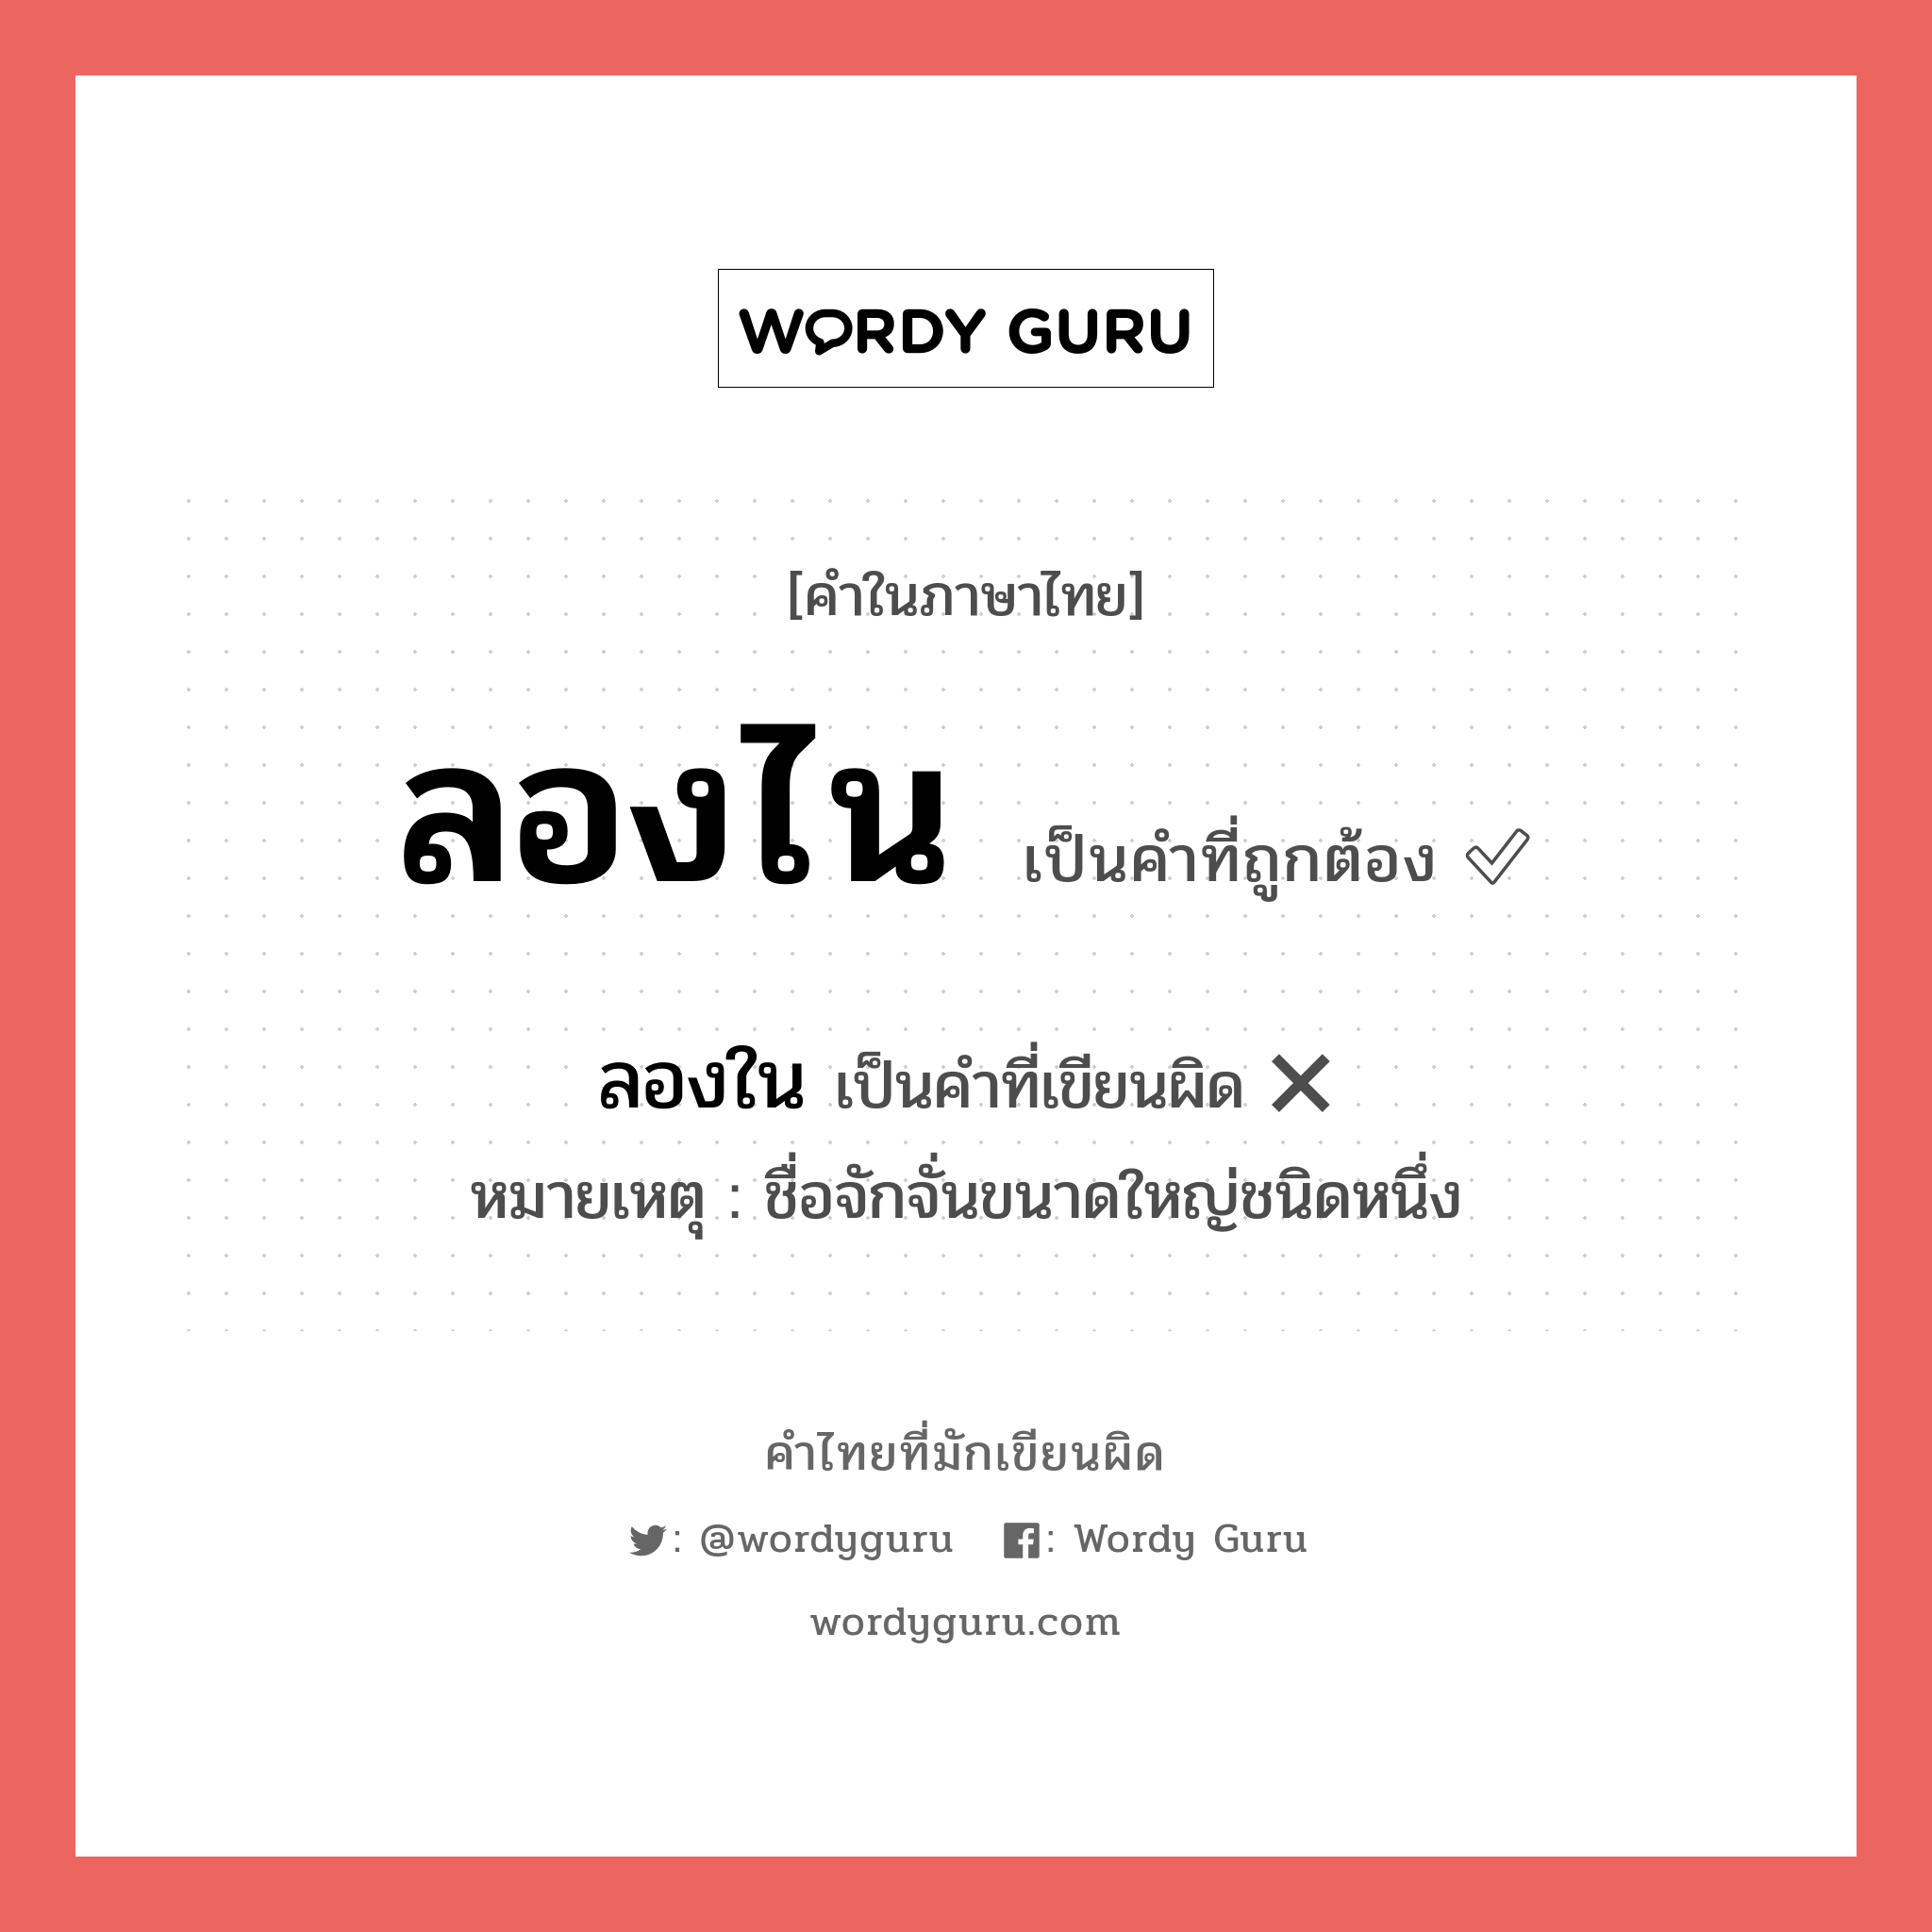 ลองไน หรือ ลองใน คำไหนเขียนถูก?, คำในภาษาไทยที่มักเขียนผิด ลองไน คำที่ผิด ❌ ลองใน หมายเหตุ ชื่อจักจั่นขนาดใหญ่ชนิดหนึ่ง